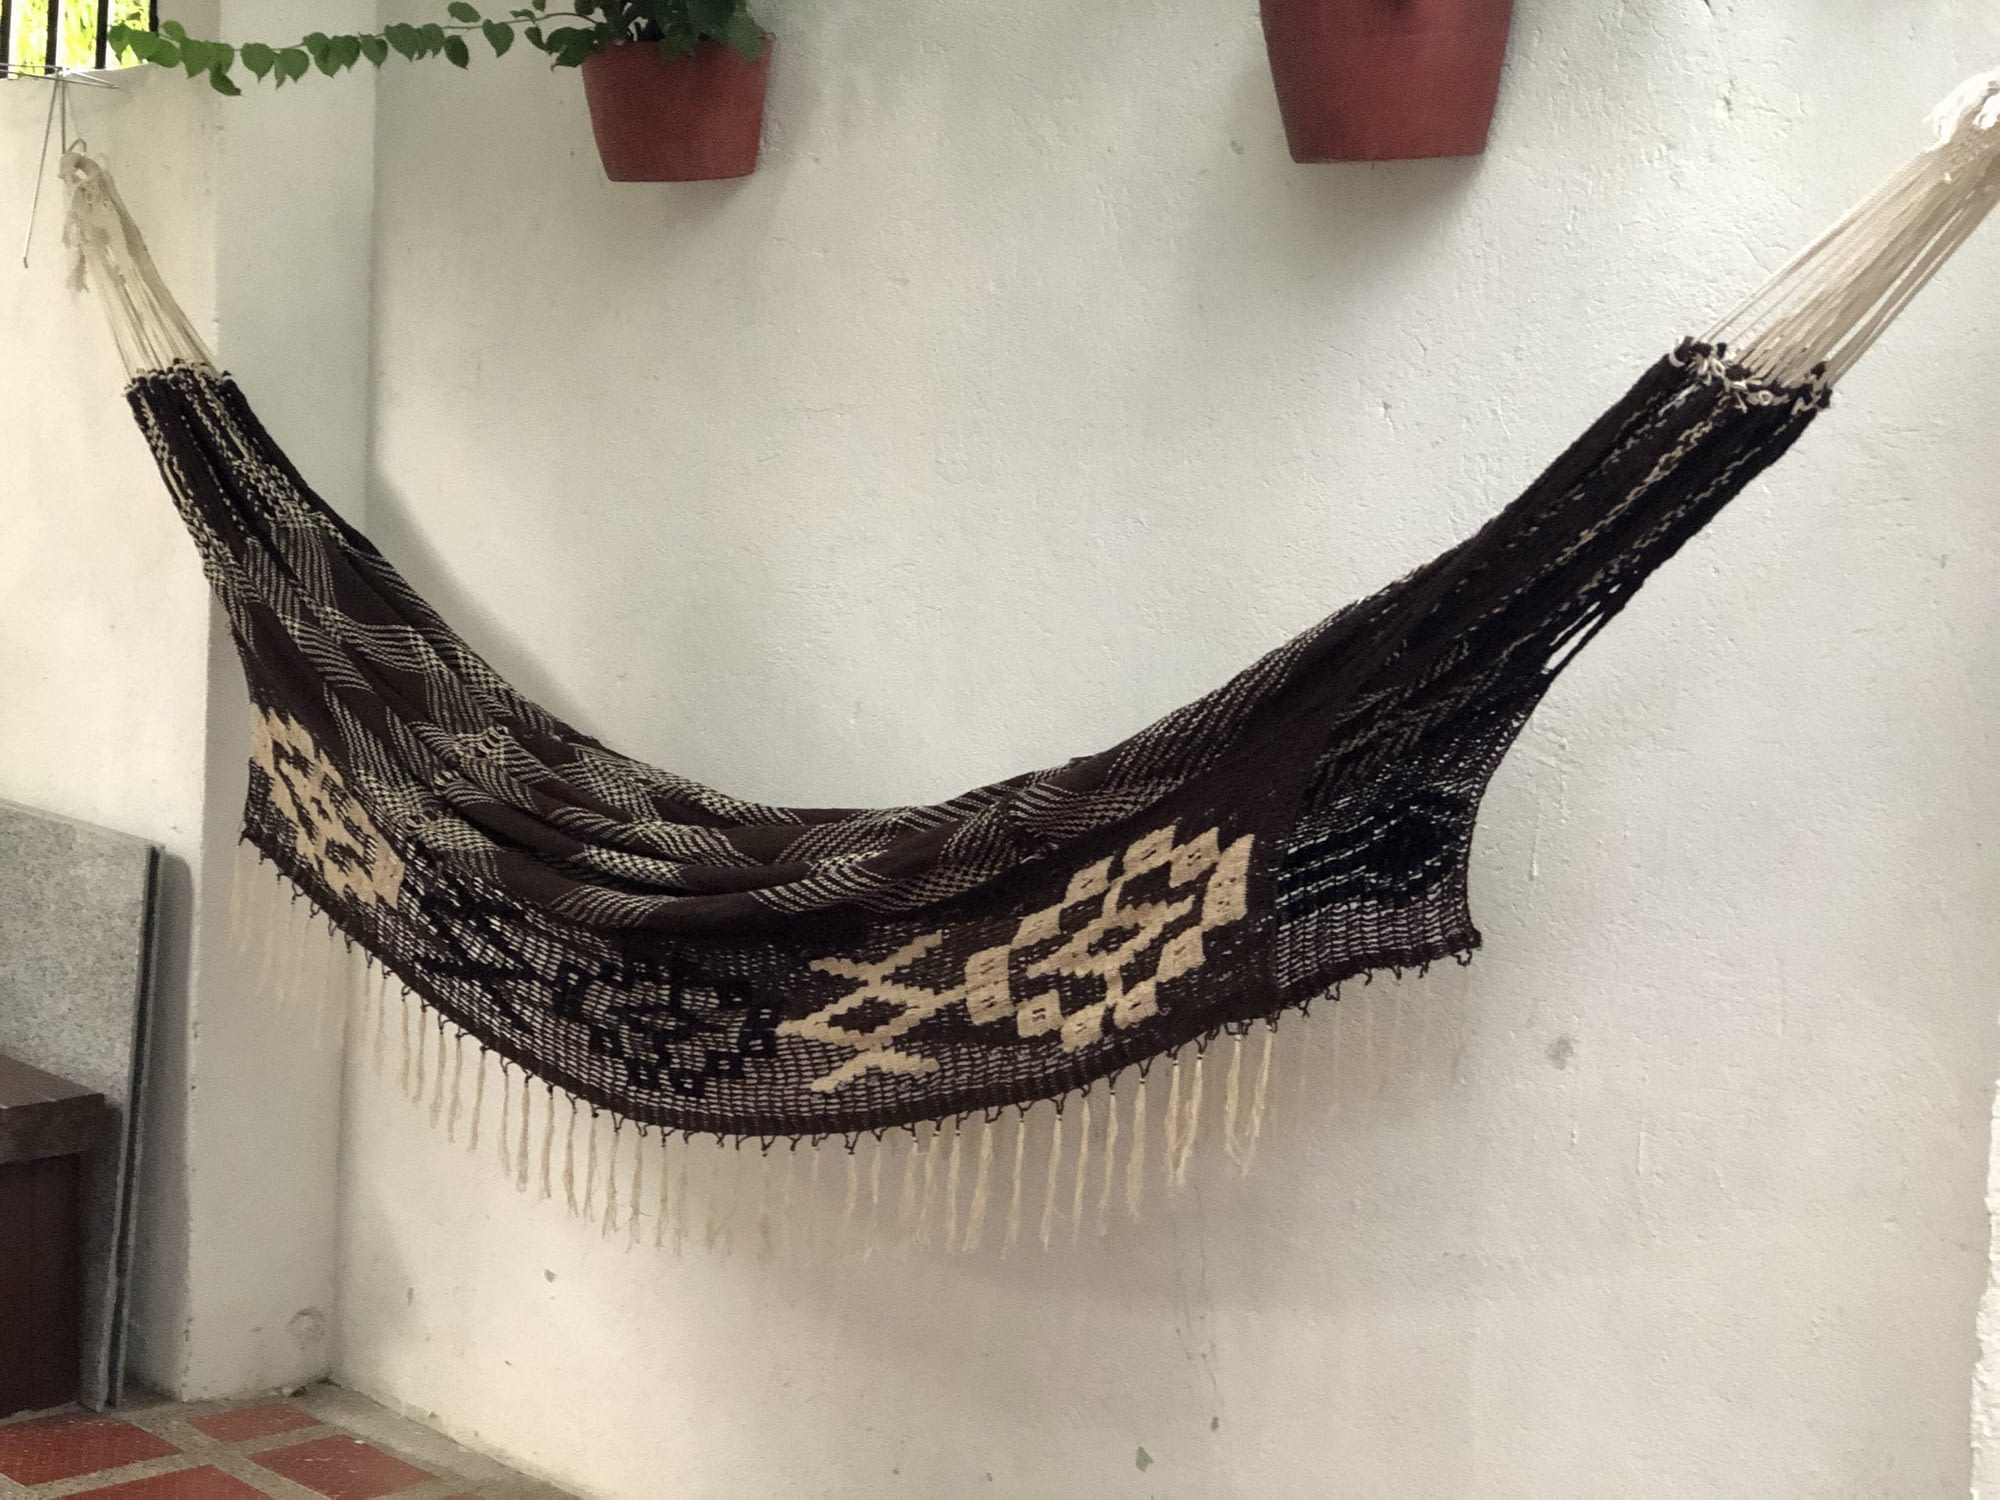 ingalex handmade wayuu hammock